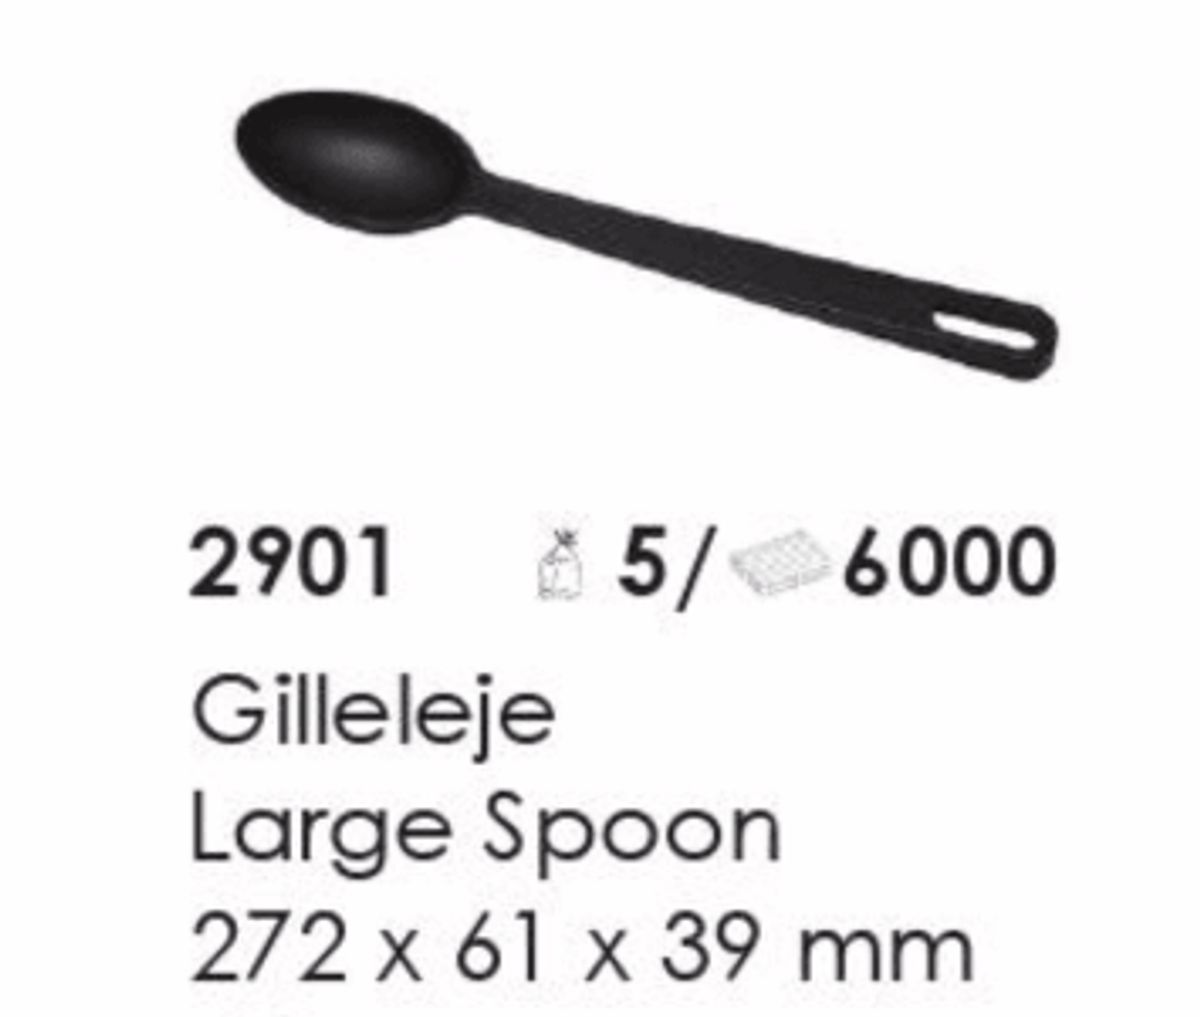 Gilleleje Large Spoon, artikel nr. 2901 (Stor ske). Foto: Screenshot fra katalog fra Plast Team A/S.